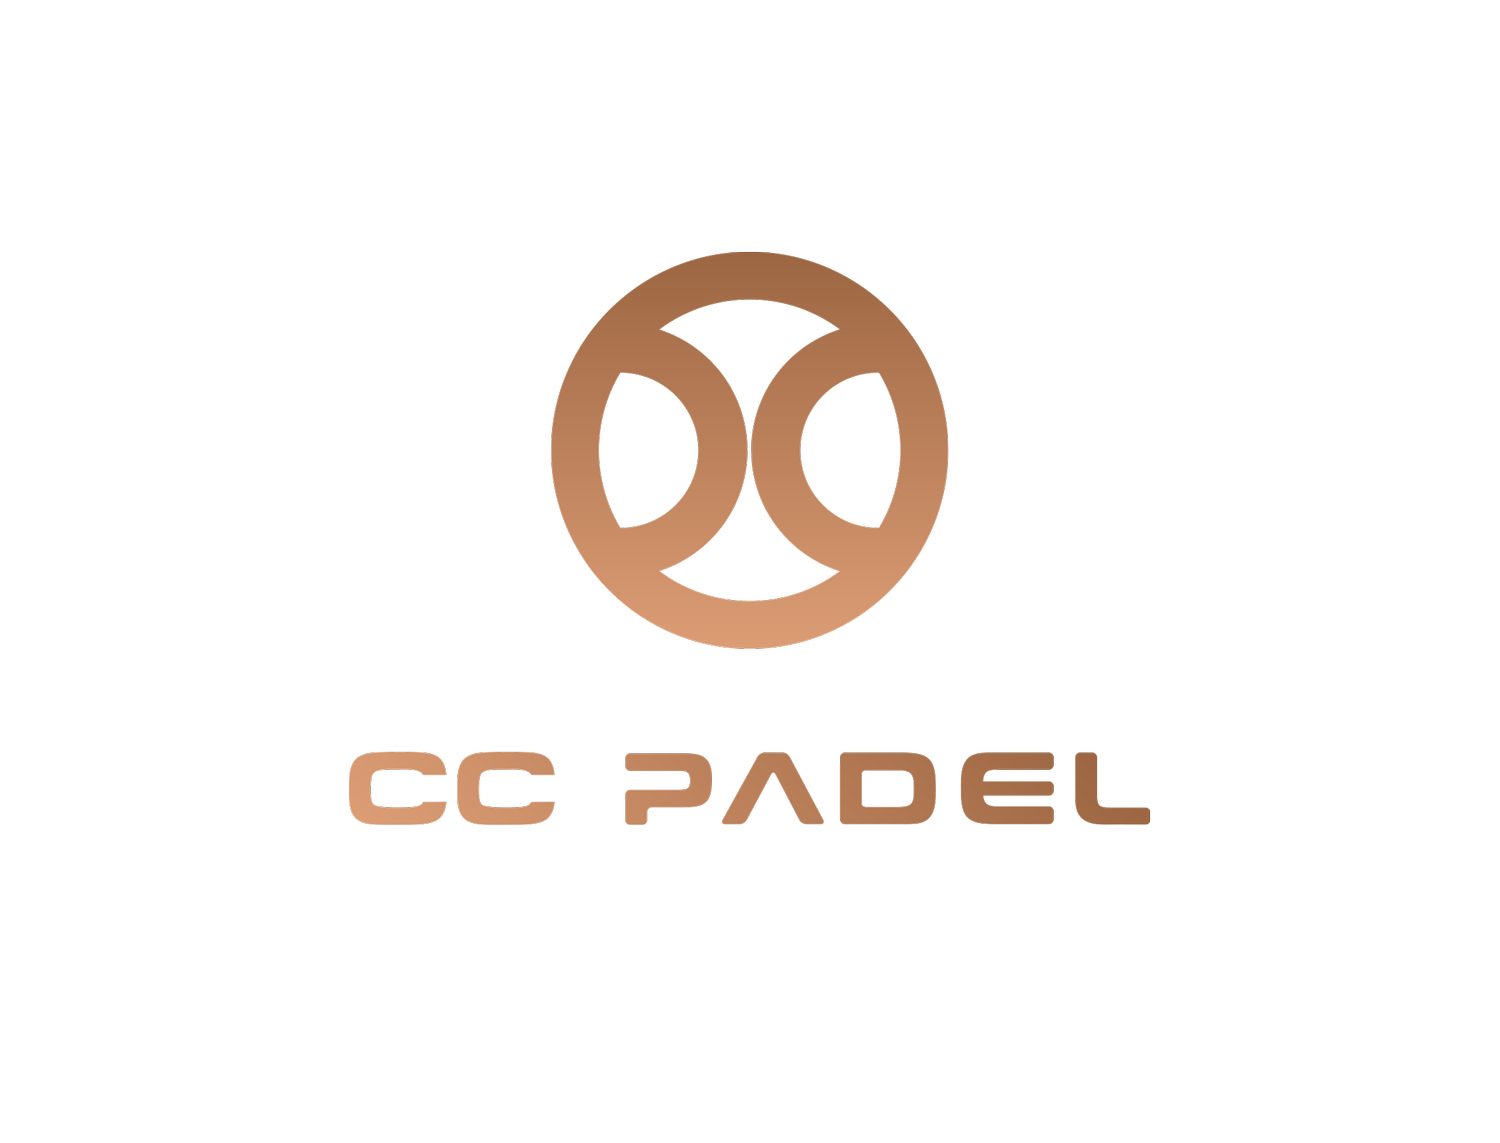 CC Padel - Trænings Clinics